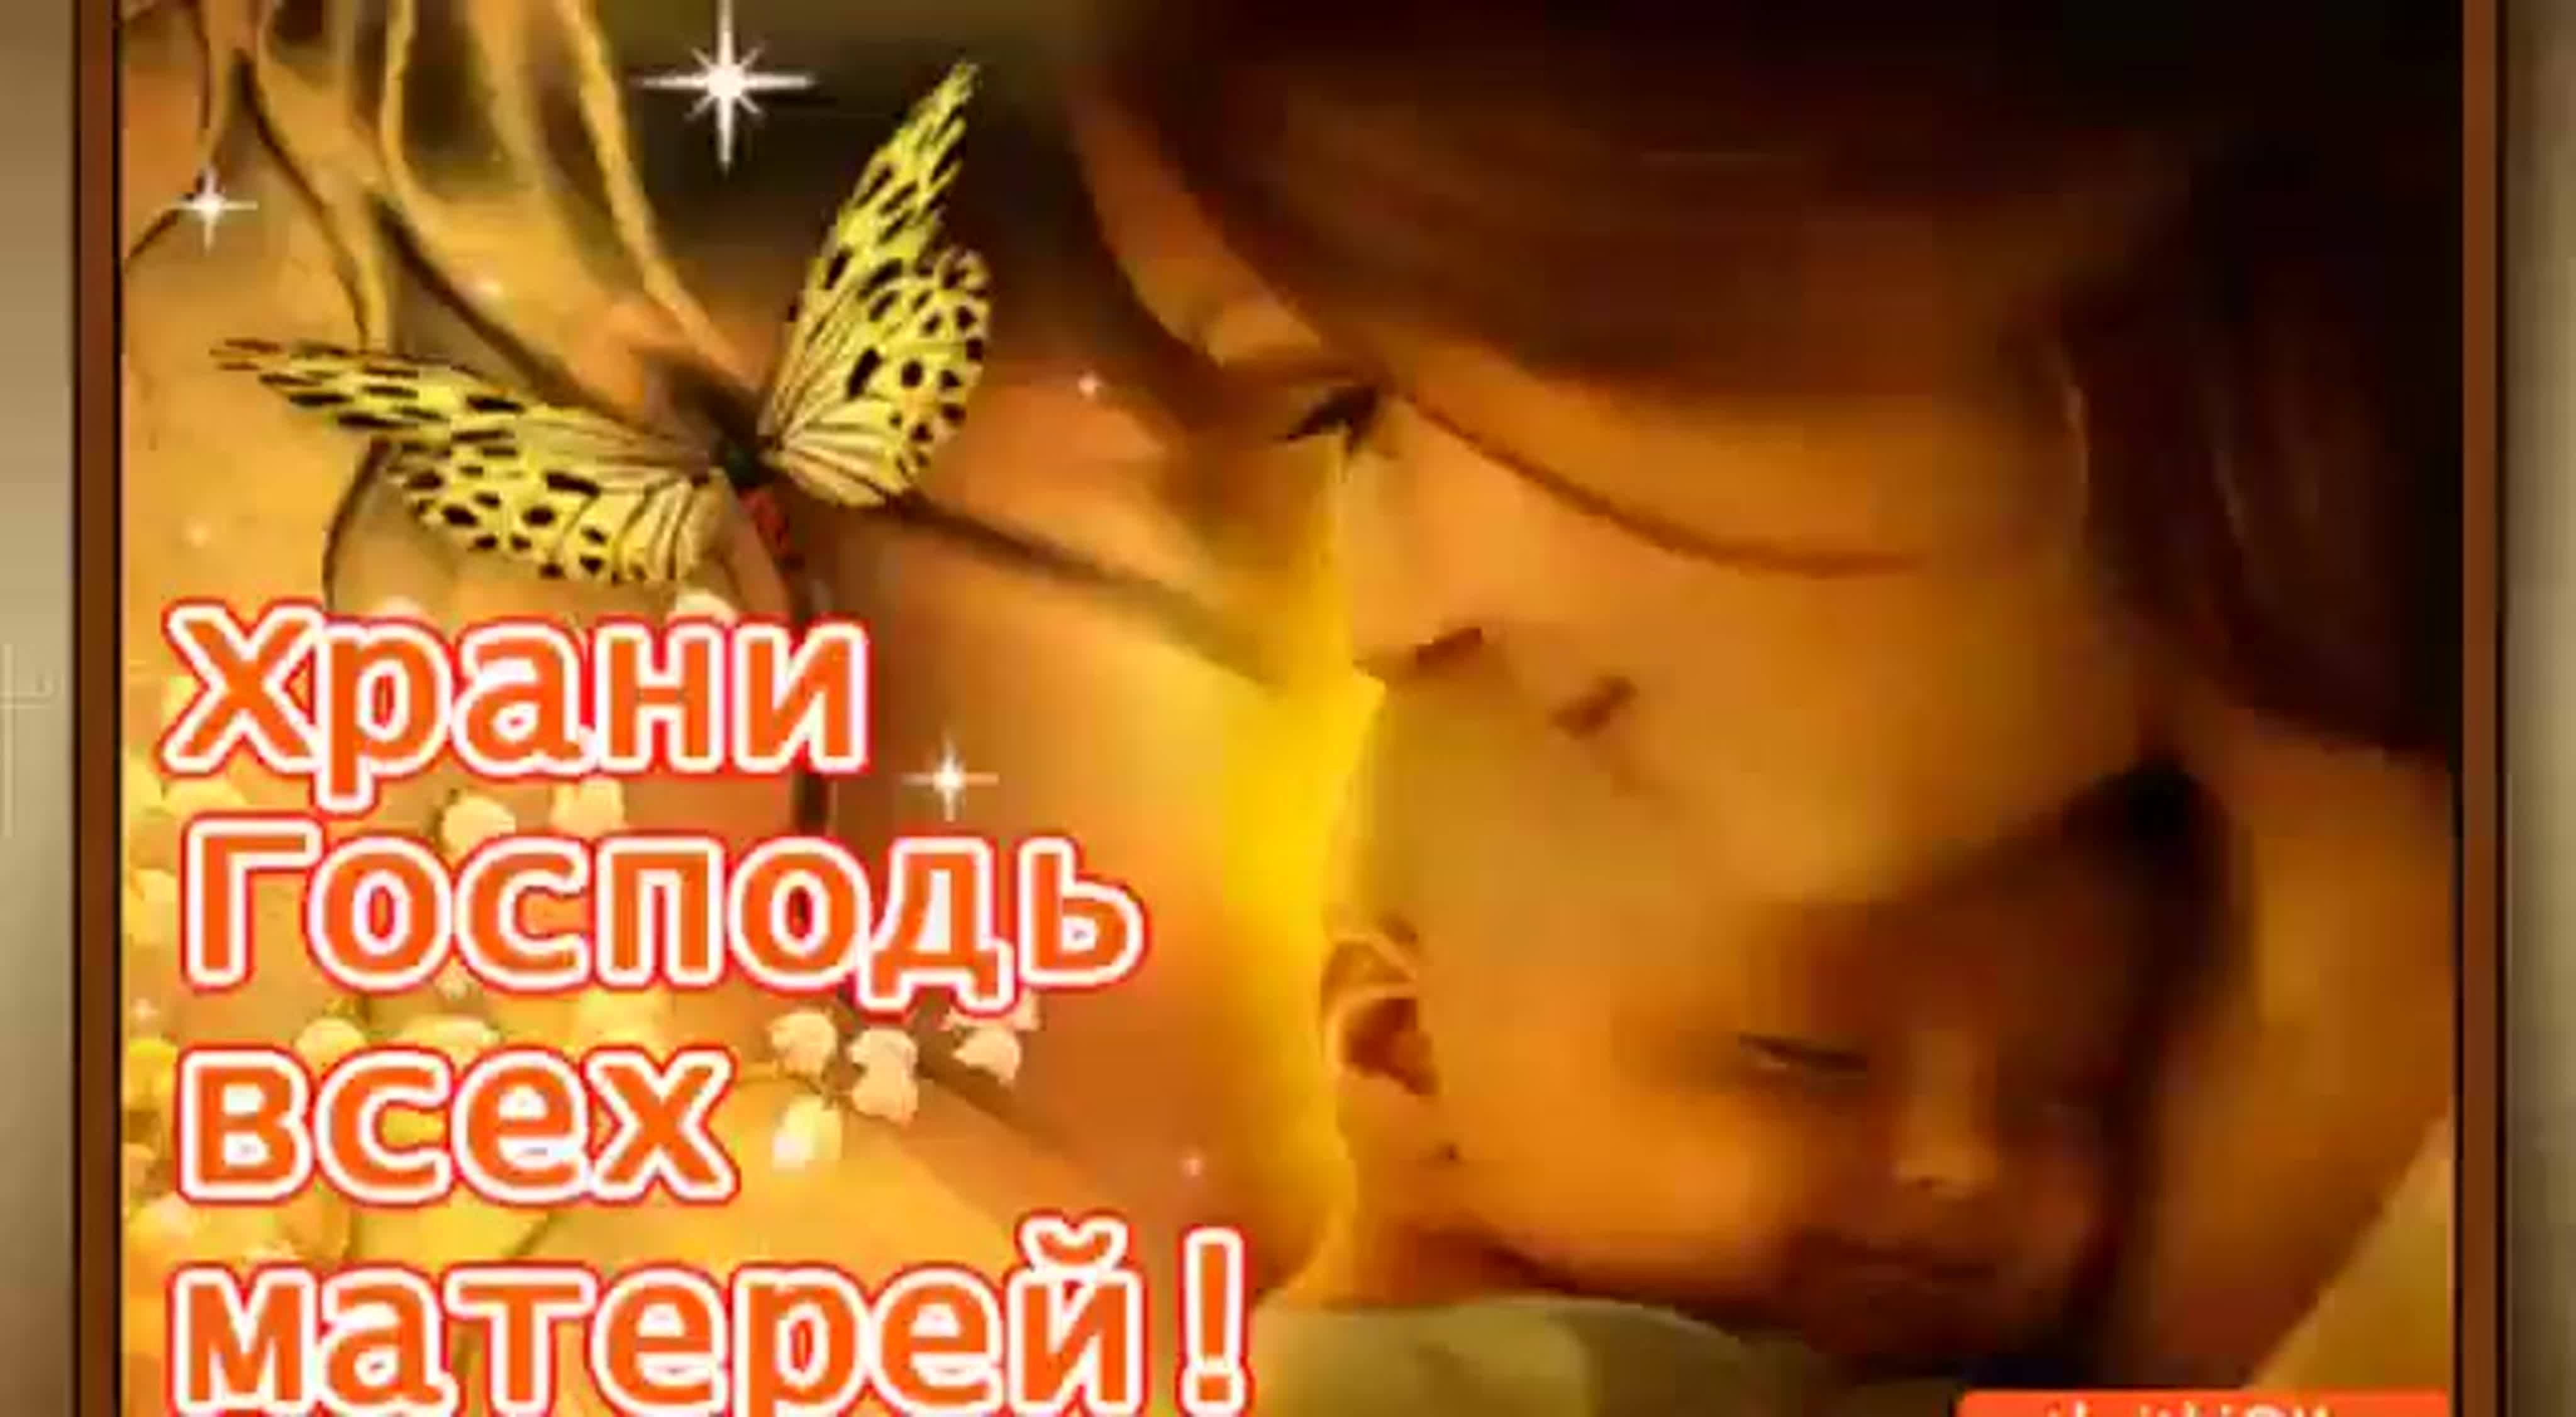 Храни Господь всех матерей открытка